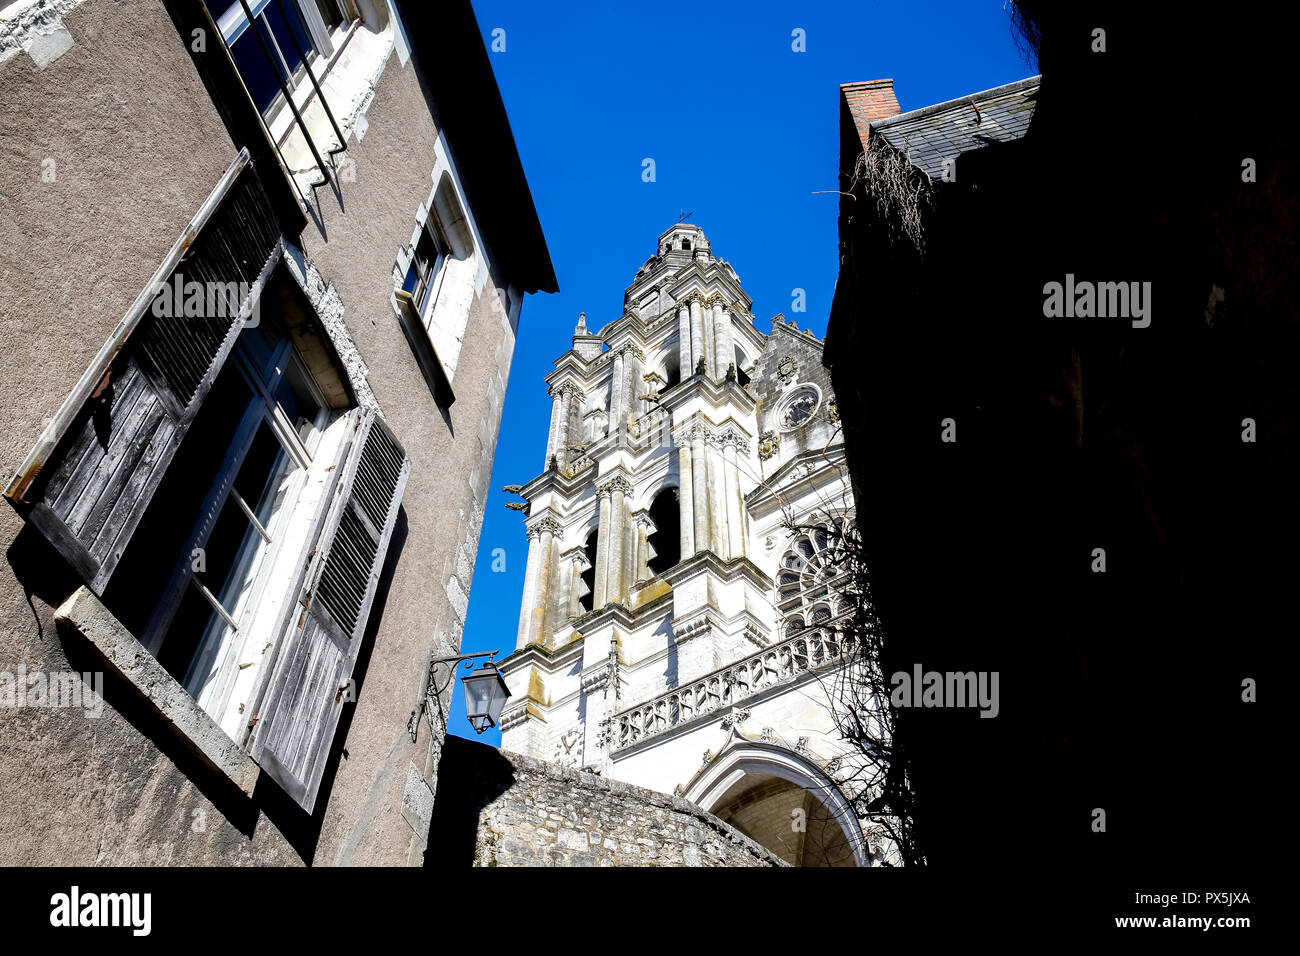 Vieille ville de Blois, France. Clocher de la cathédrale. Banque D'Images